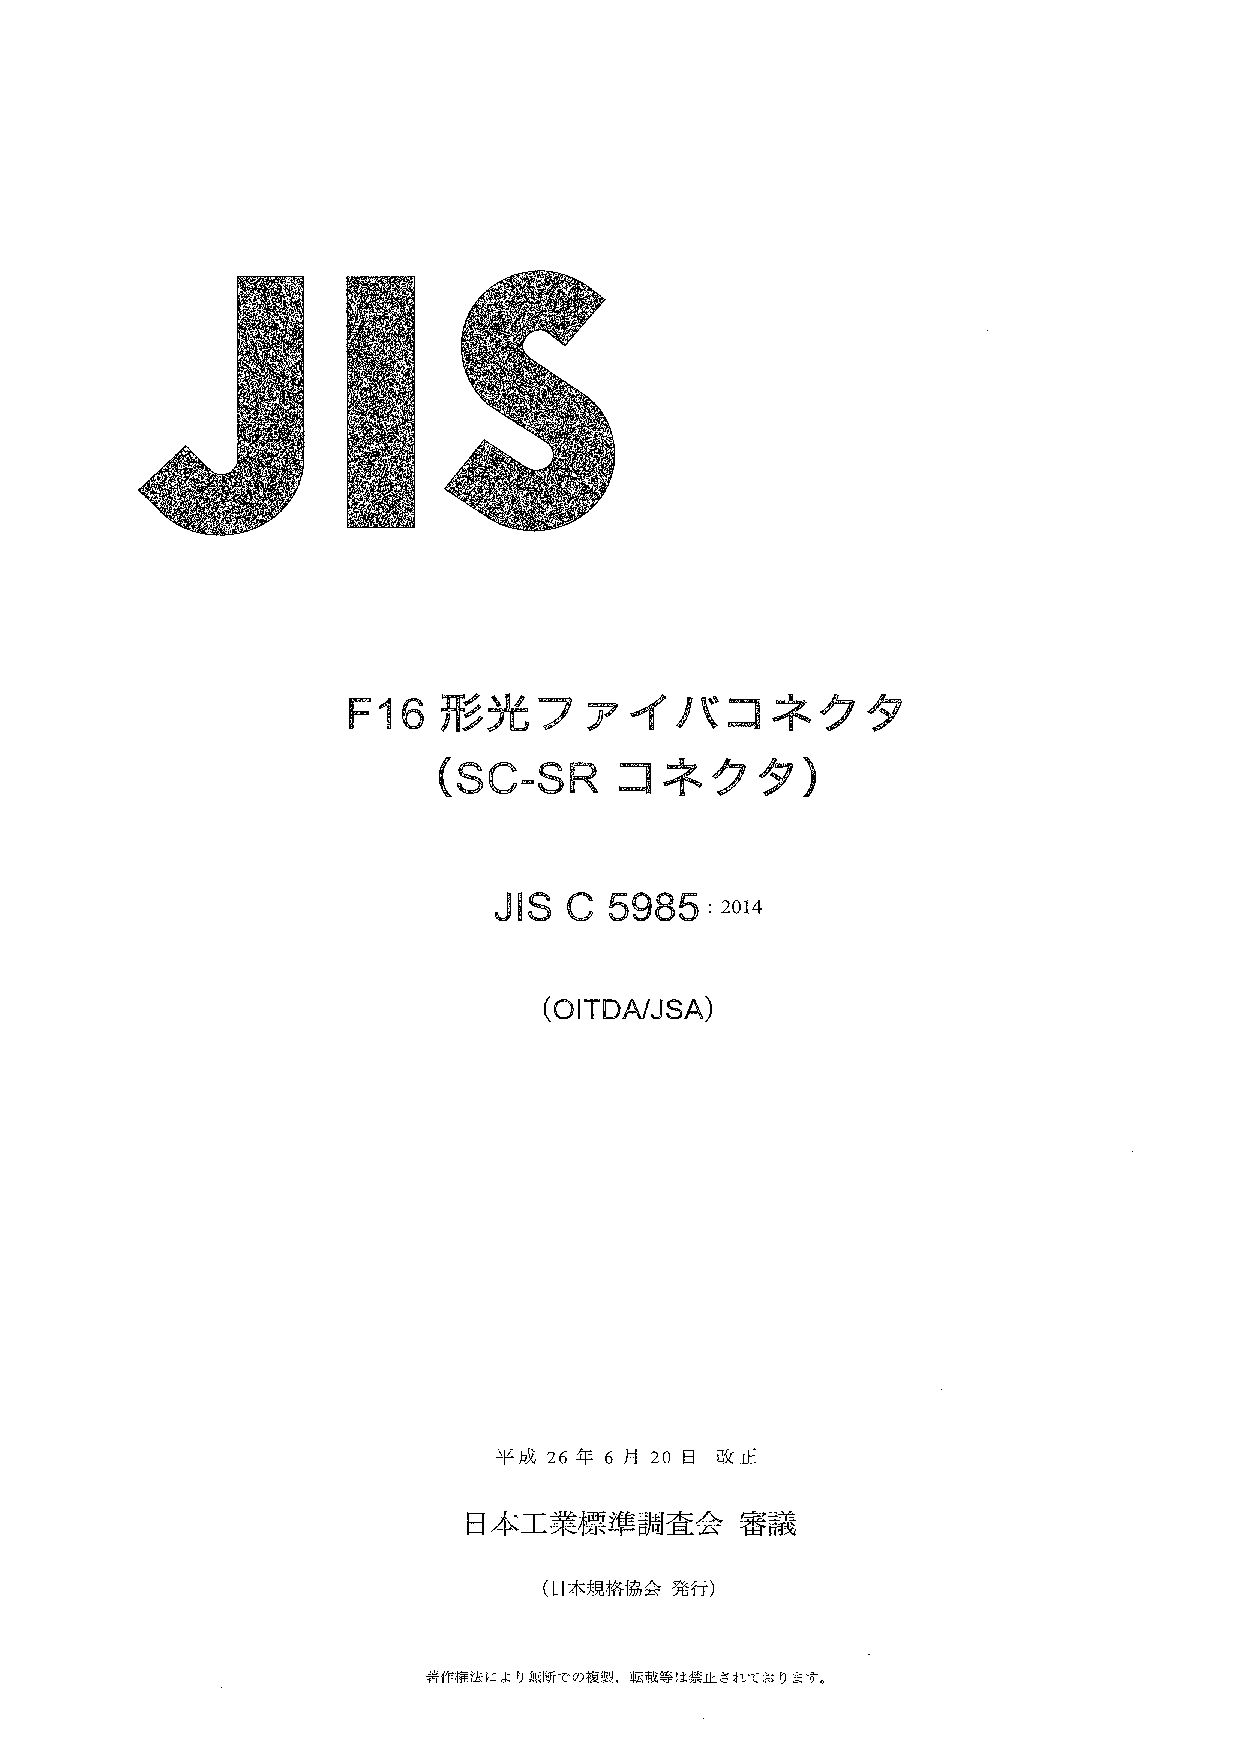 JIS C 5985:2014封面图